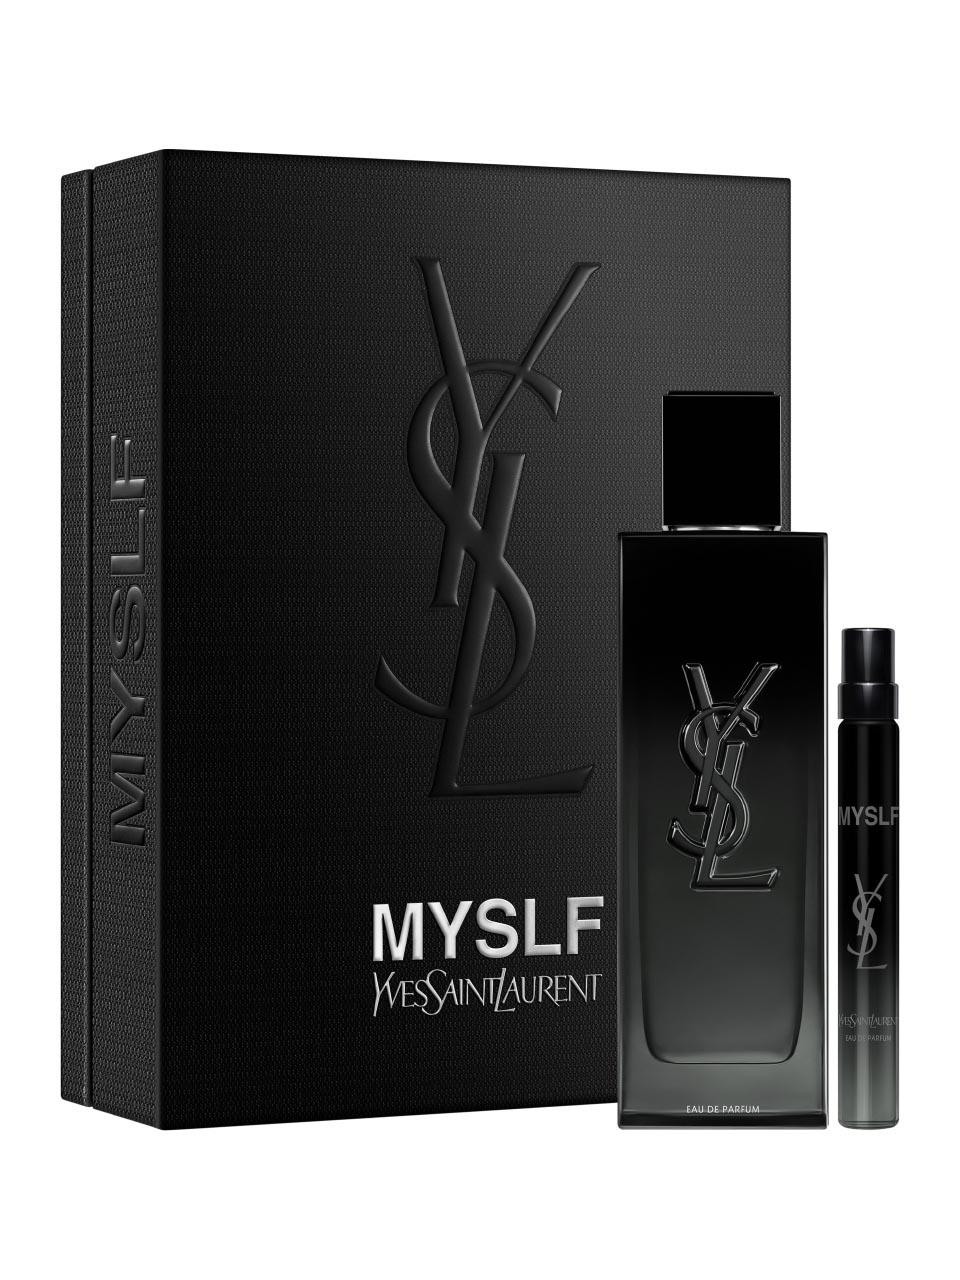 Yves Saint Laurent MYSLF Set | Frankfurt Airport Online Shopping